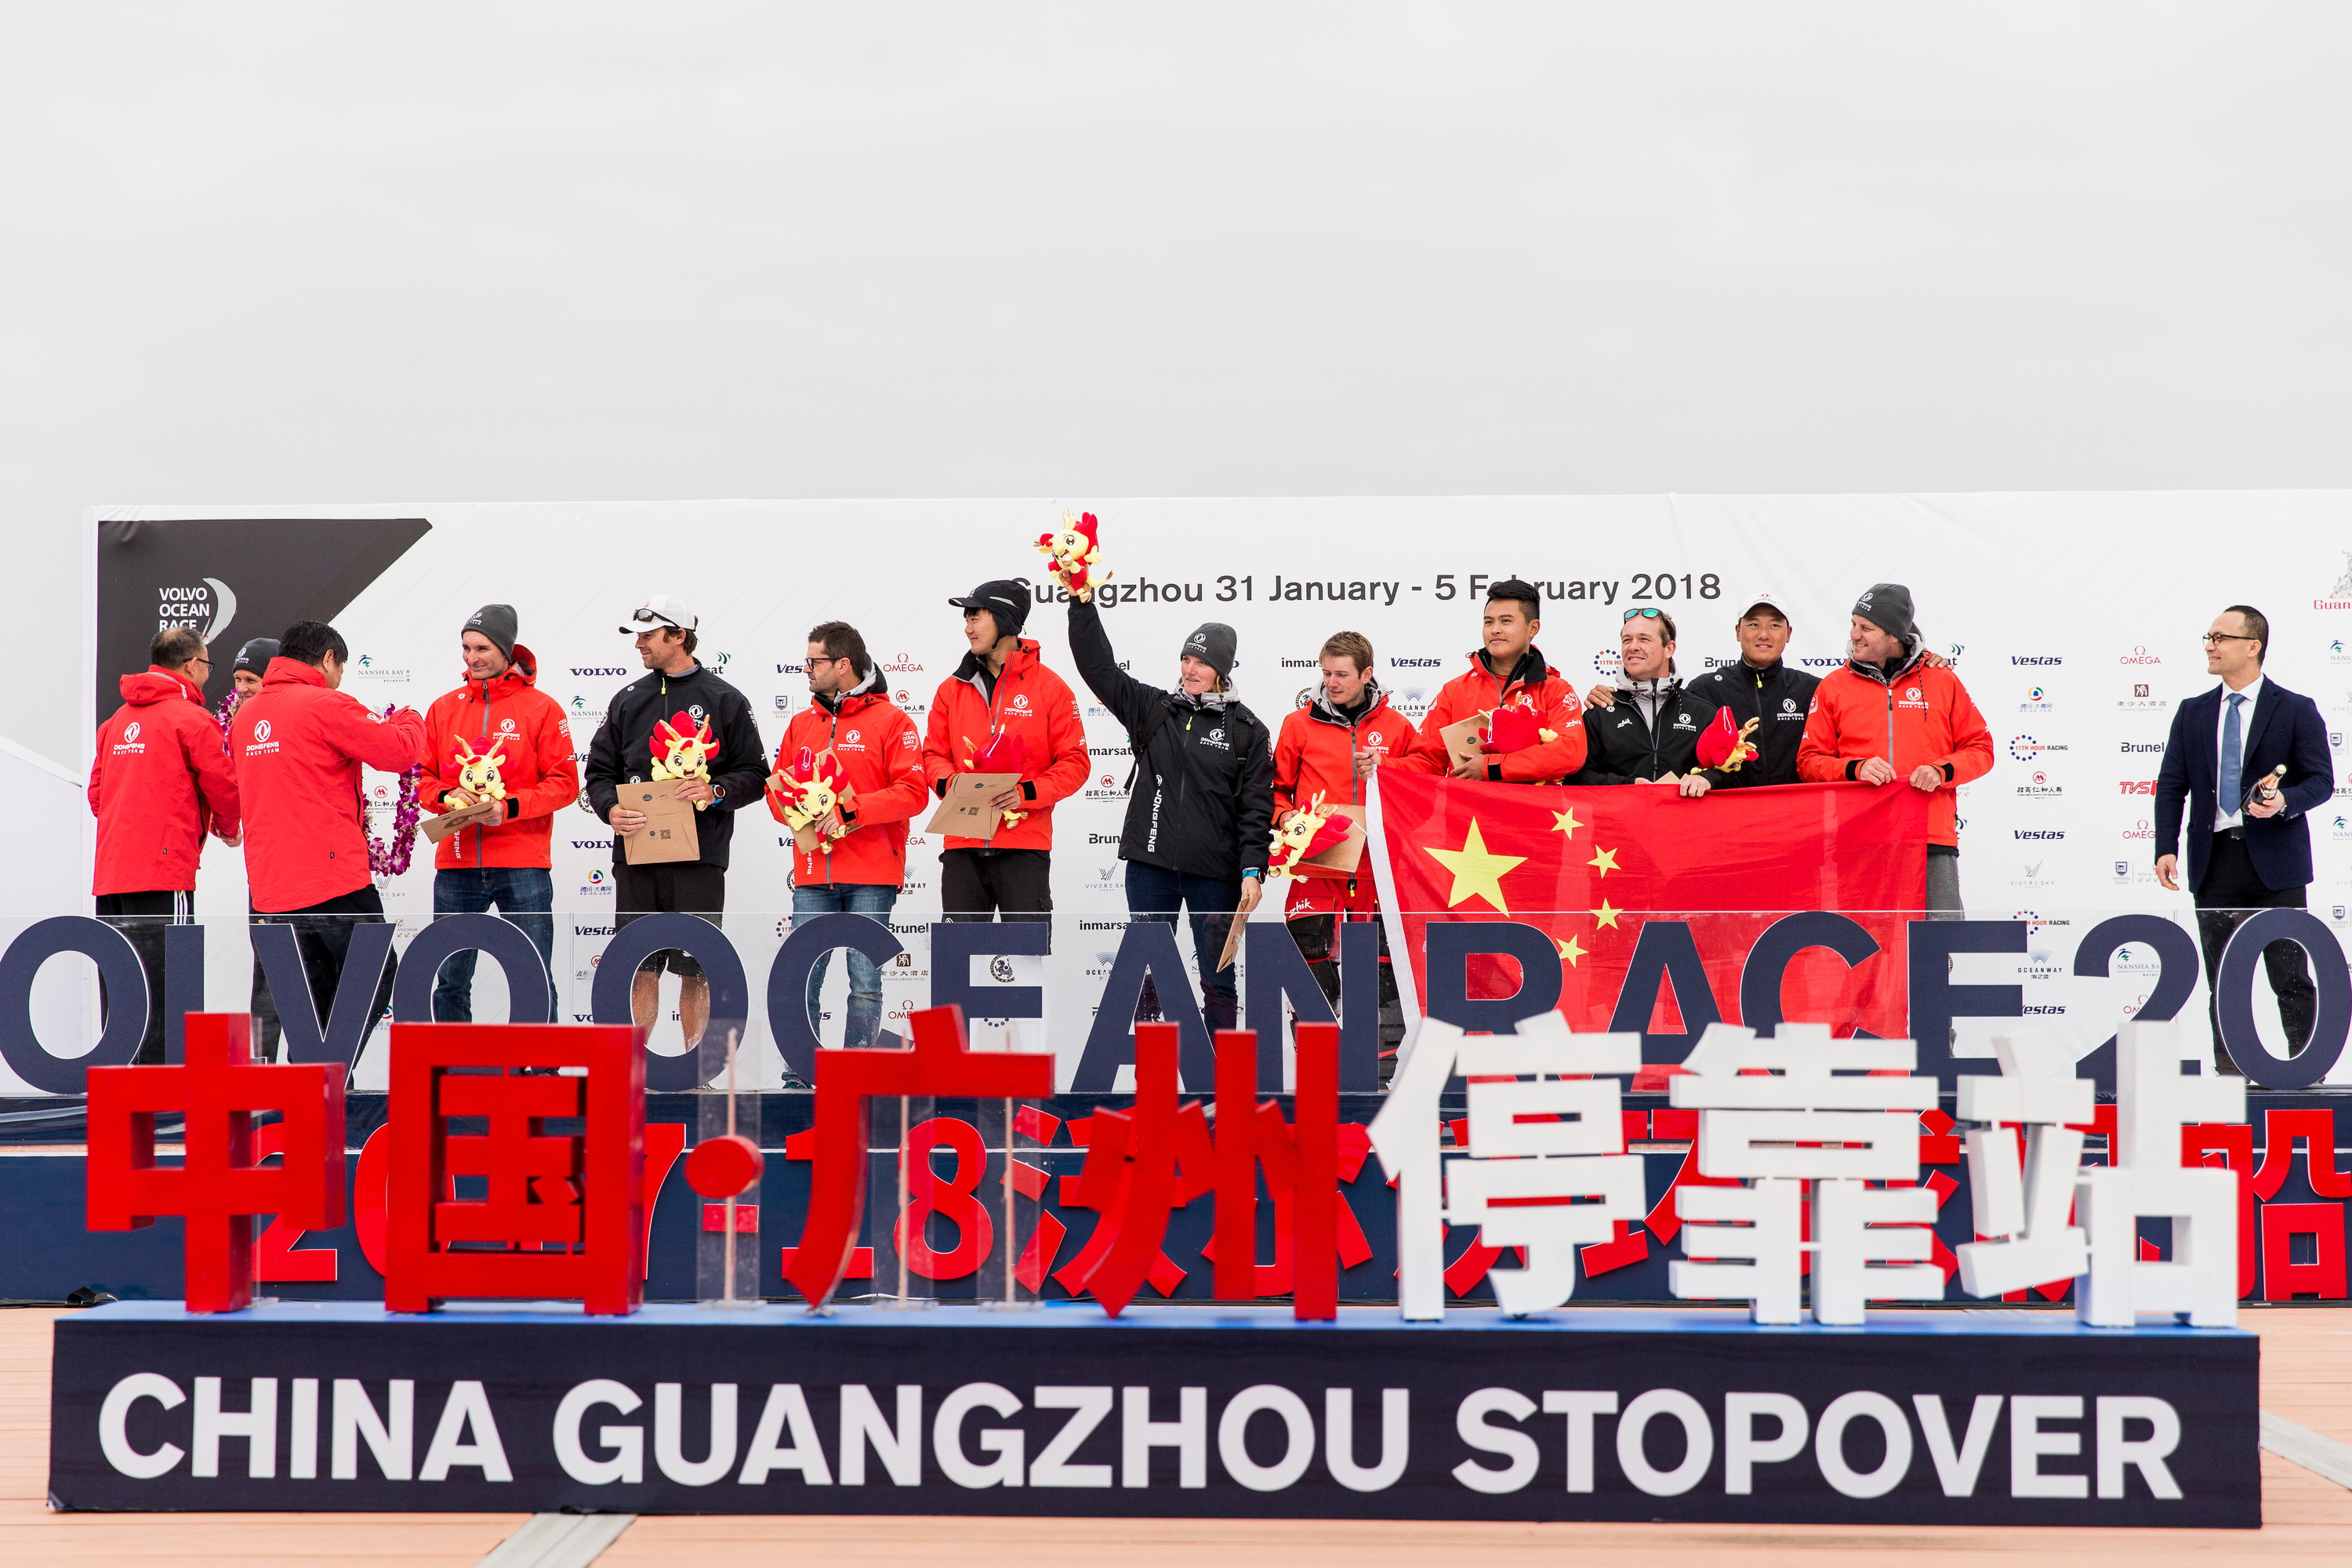 沃爾沃環球帆船賽中國廣州站活動在南沙開幕